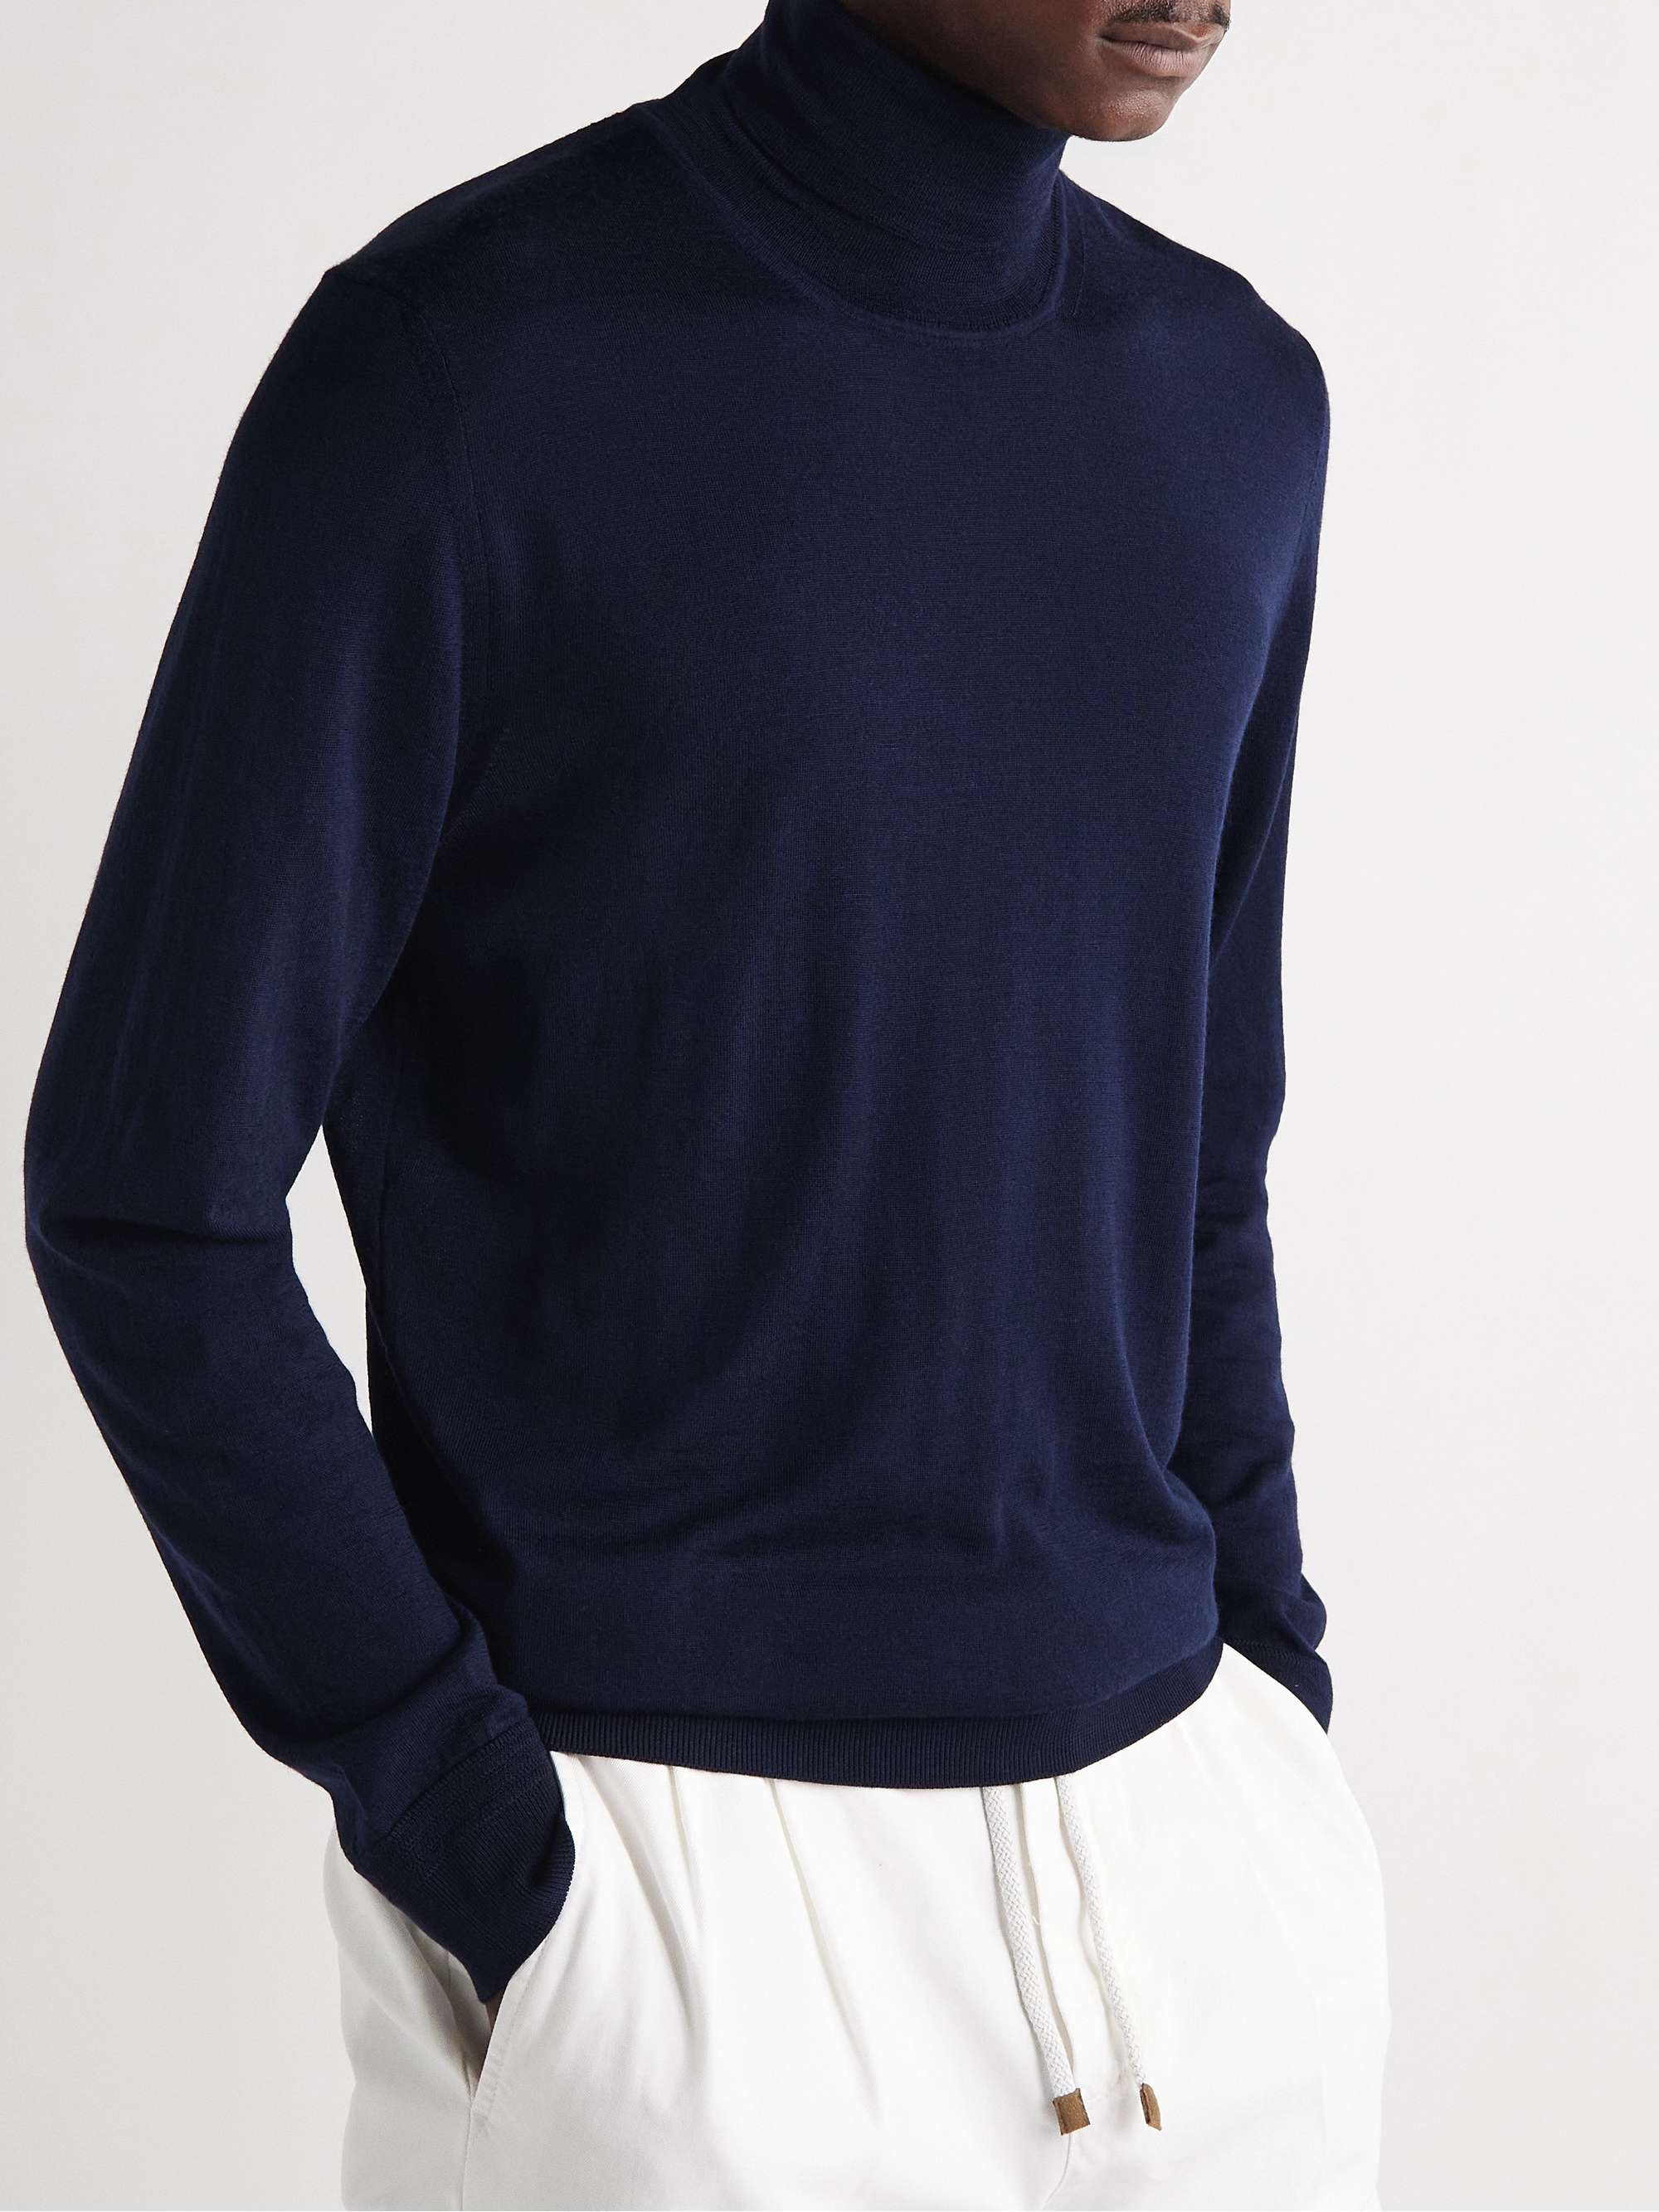 RICHARD JAMES Merino Wool Rollneck Sweater for Men | MR PORTER